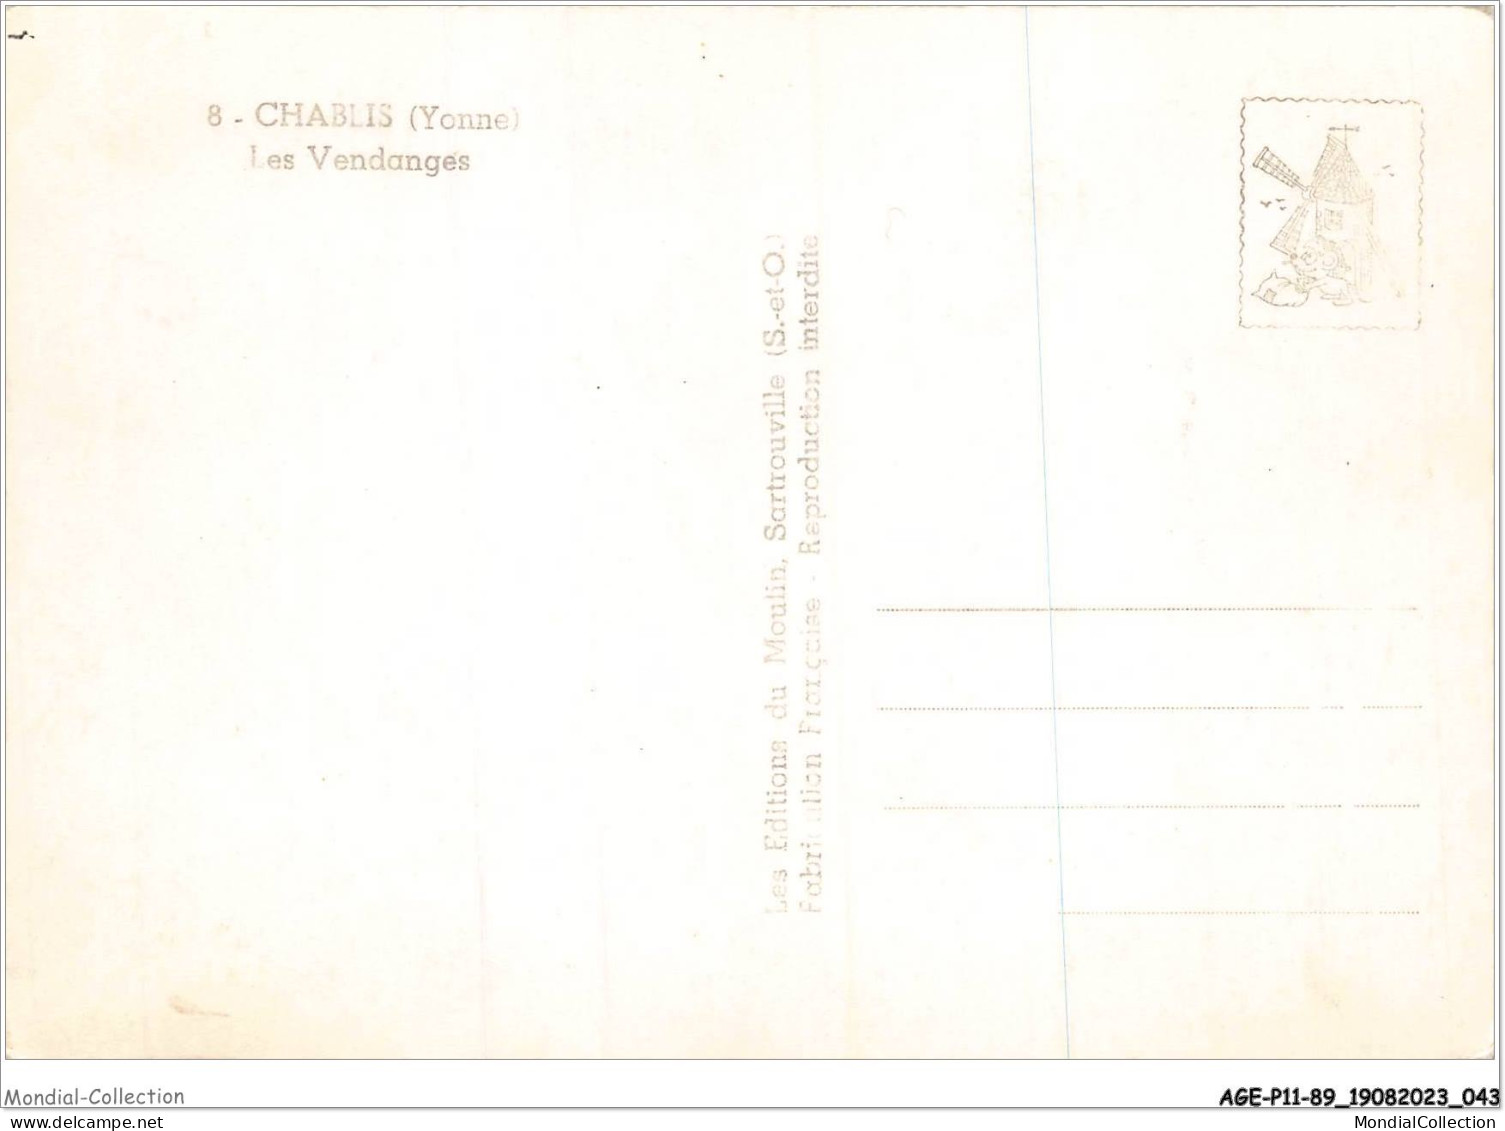 AGEP11-89-0957 - CHABLIS - Yonne - Les Vendanges - Chablis